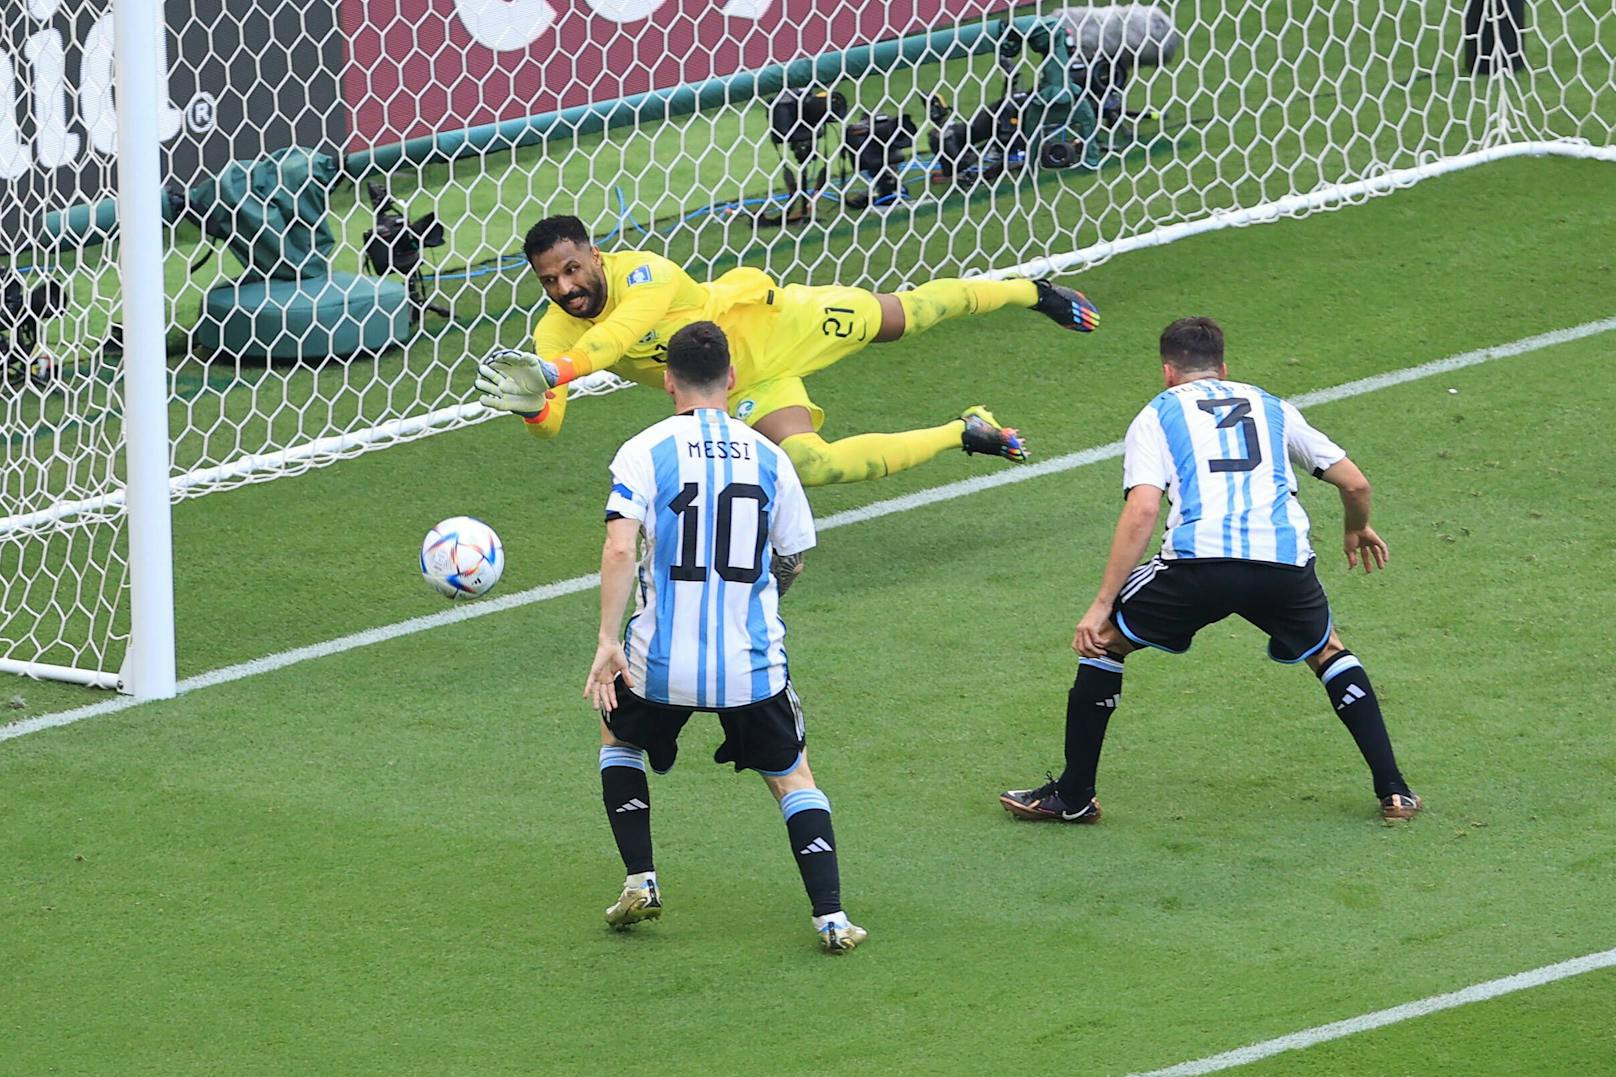 Messi und seine "Gauchos" dagegen brachten den Ball nicht im Tor des Gegners unter.